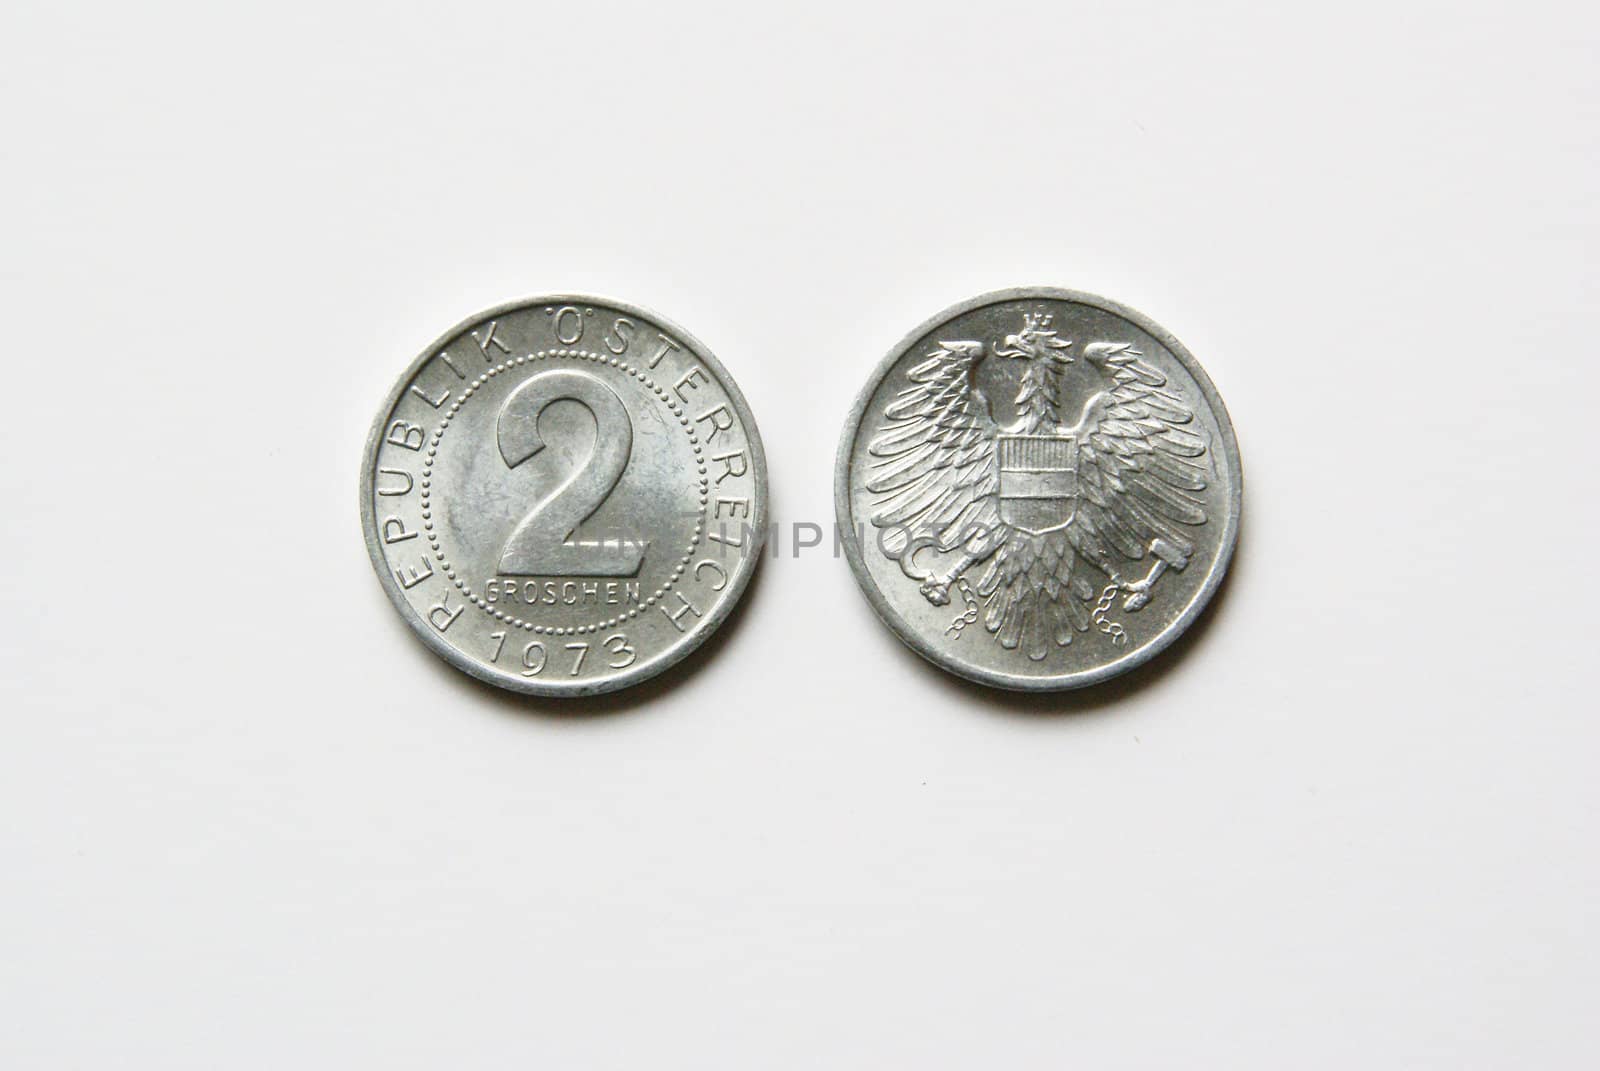 Old Austrian 2 Groschen coins (before Euro)